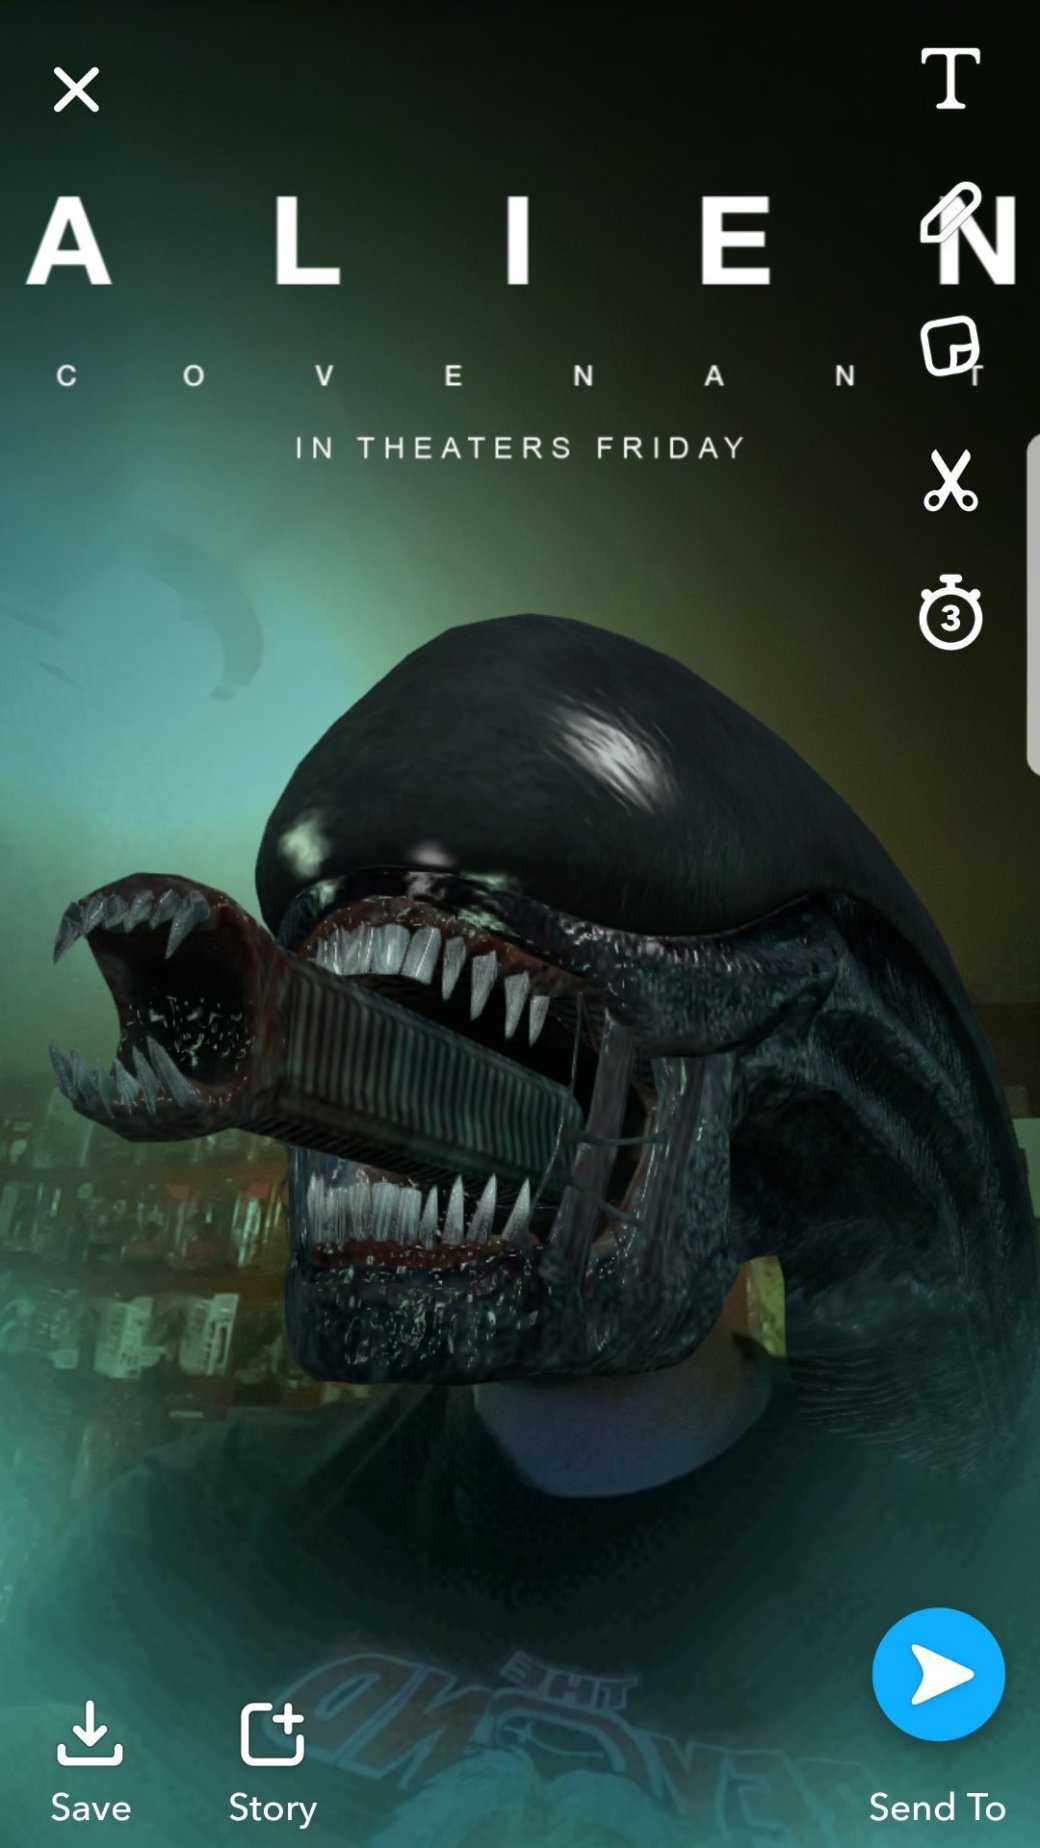 Галерея Новый фильтр для Snapchat позволит вам стать чужим из Alien Covenant - 2 фото